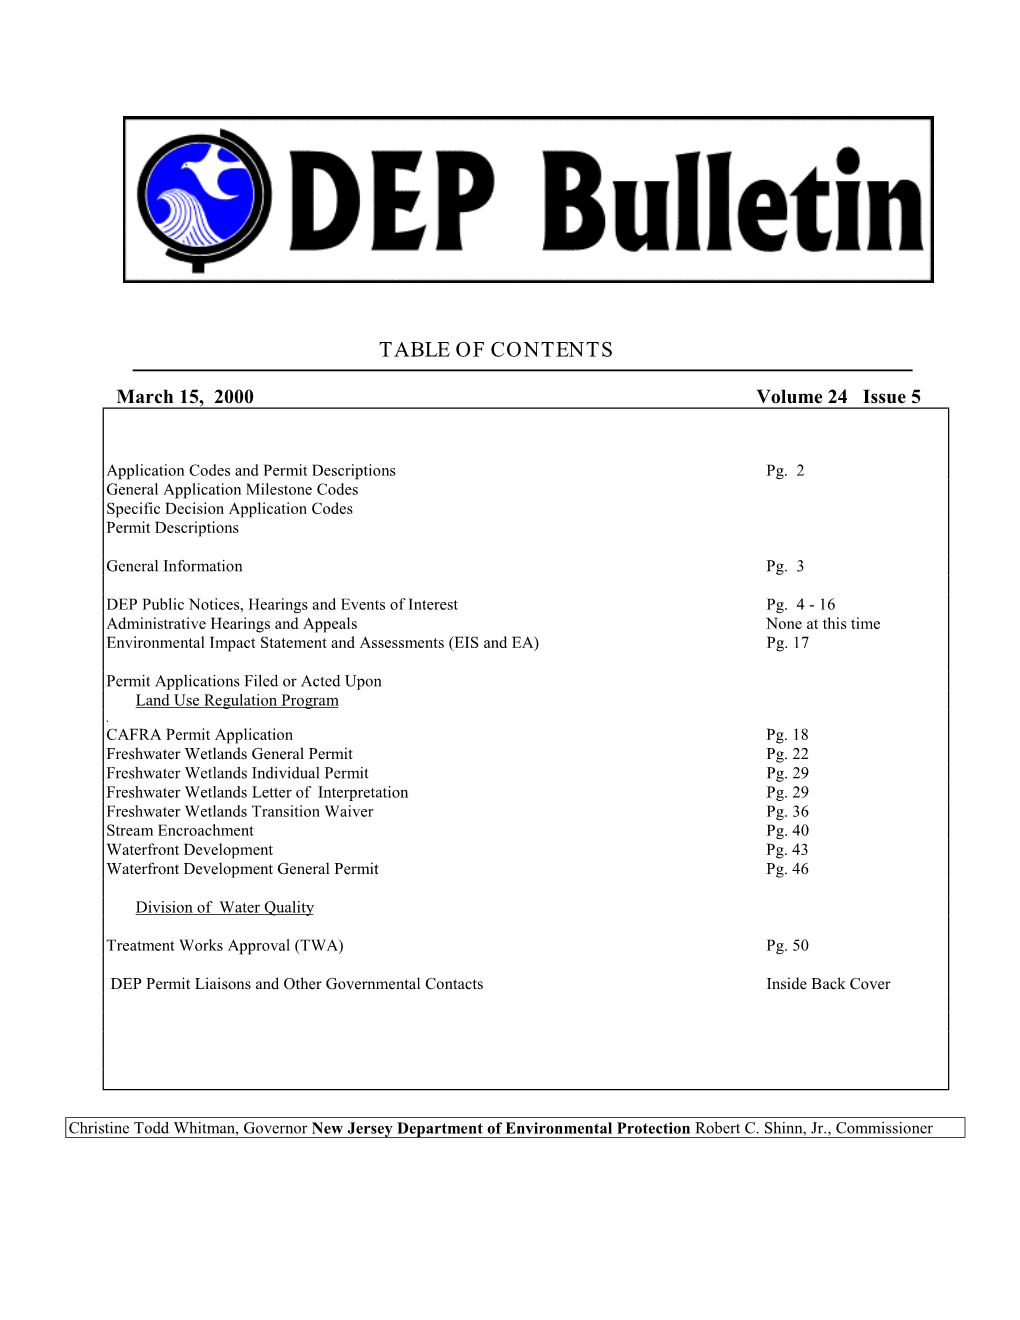 DEP Bulletin, 3/15/00